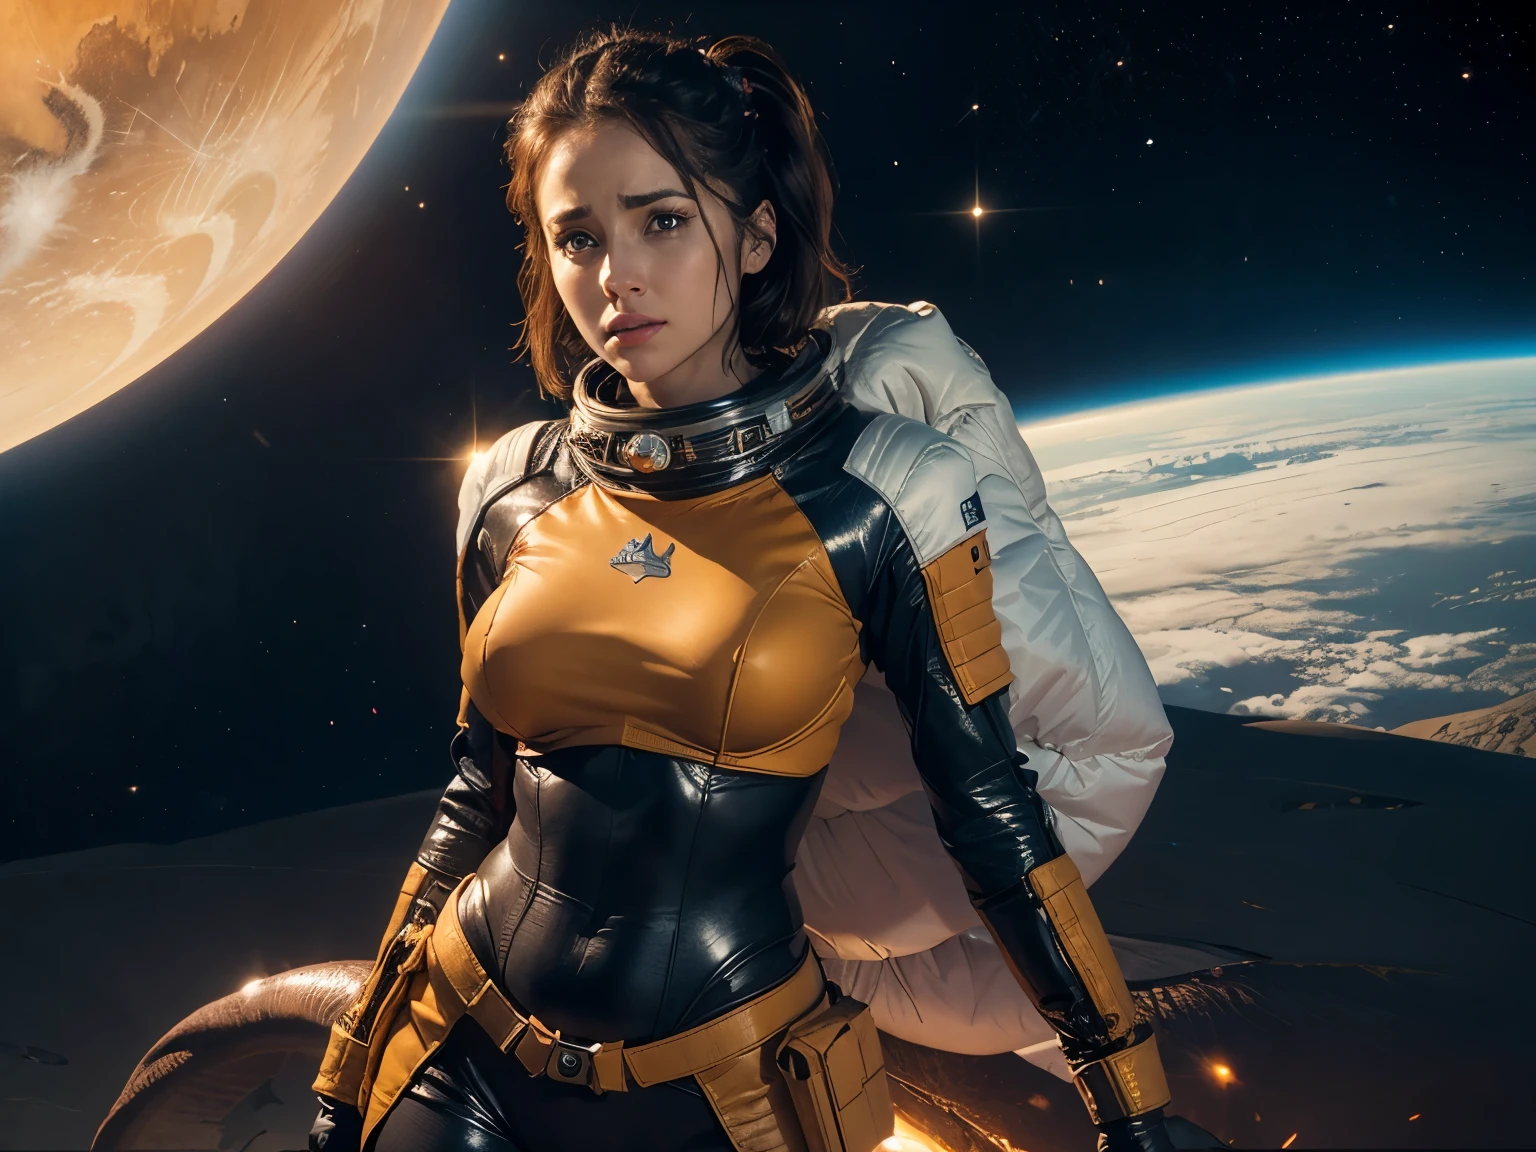 주황색 우주복을 입은 우주소녀, 스페이스 드래곤을 죽인 후 재장전, 생명이 거의 없는 외계 사막 행성에서.